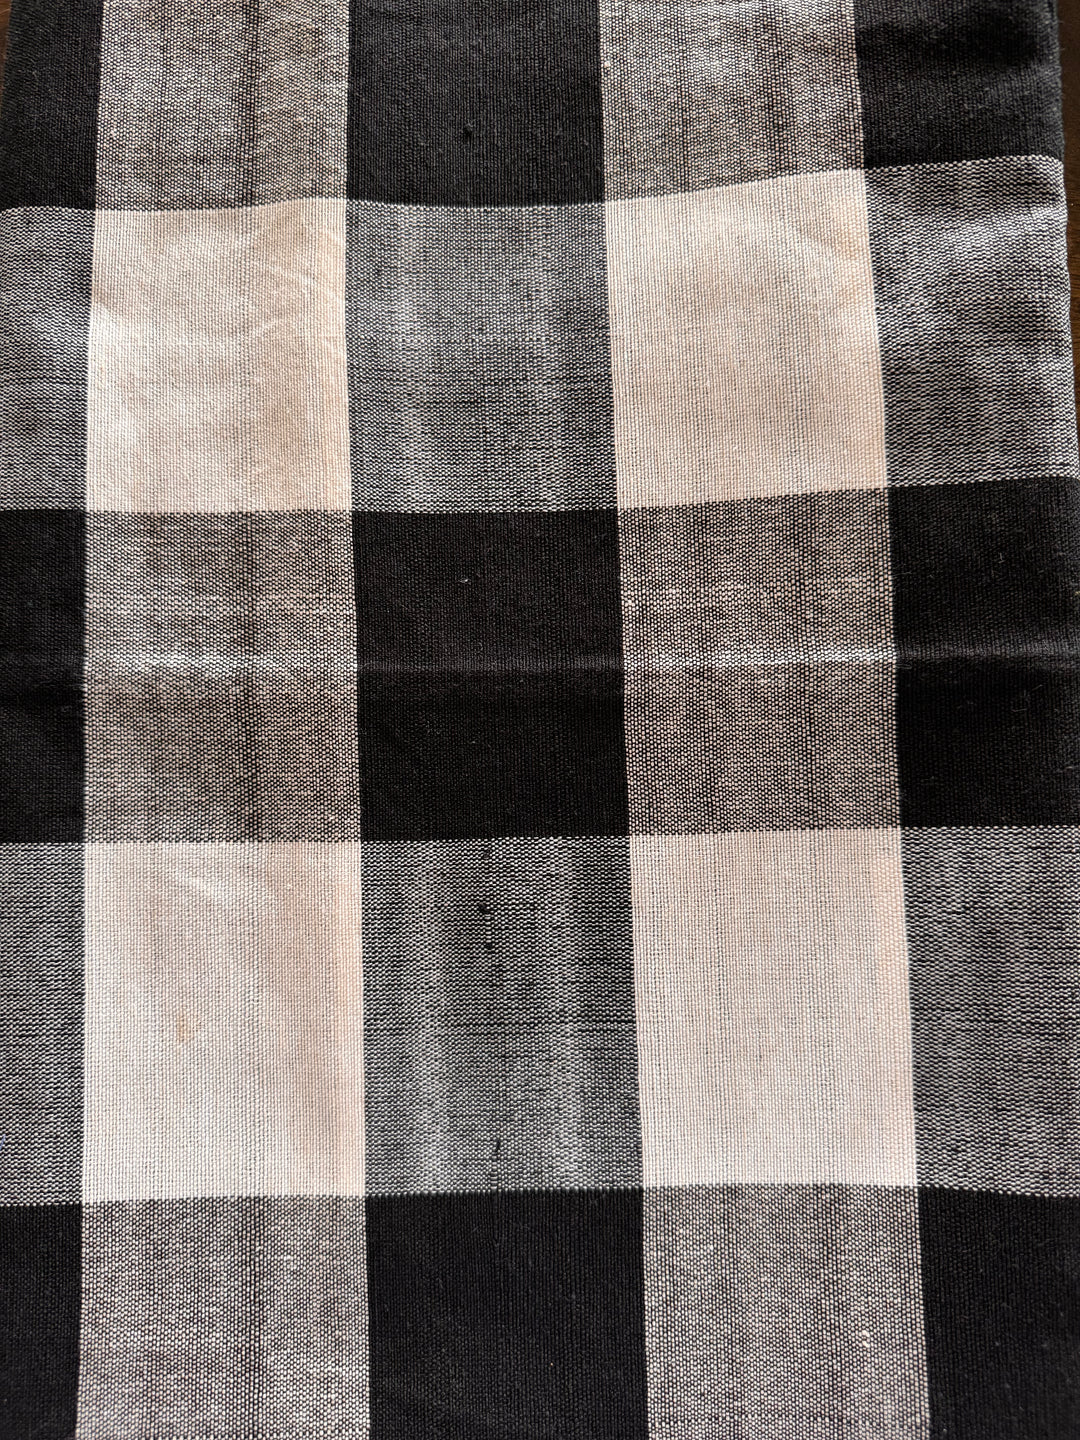 Checkered Tablecloth | 100% Cotton